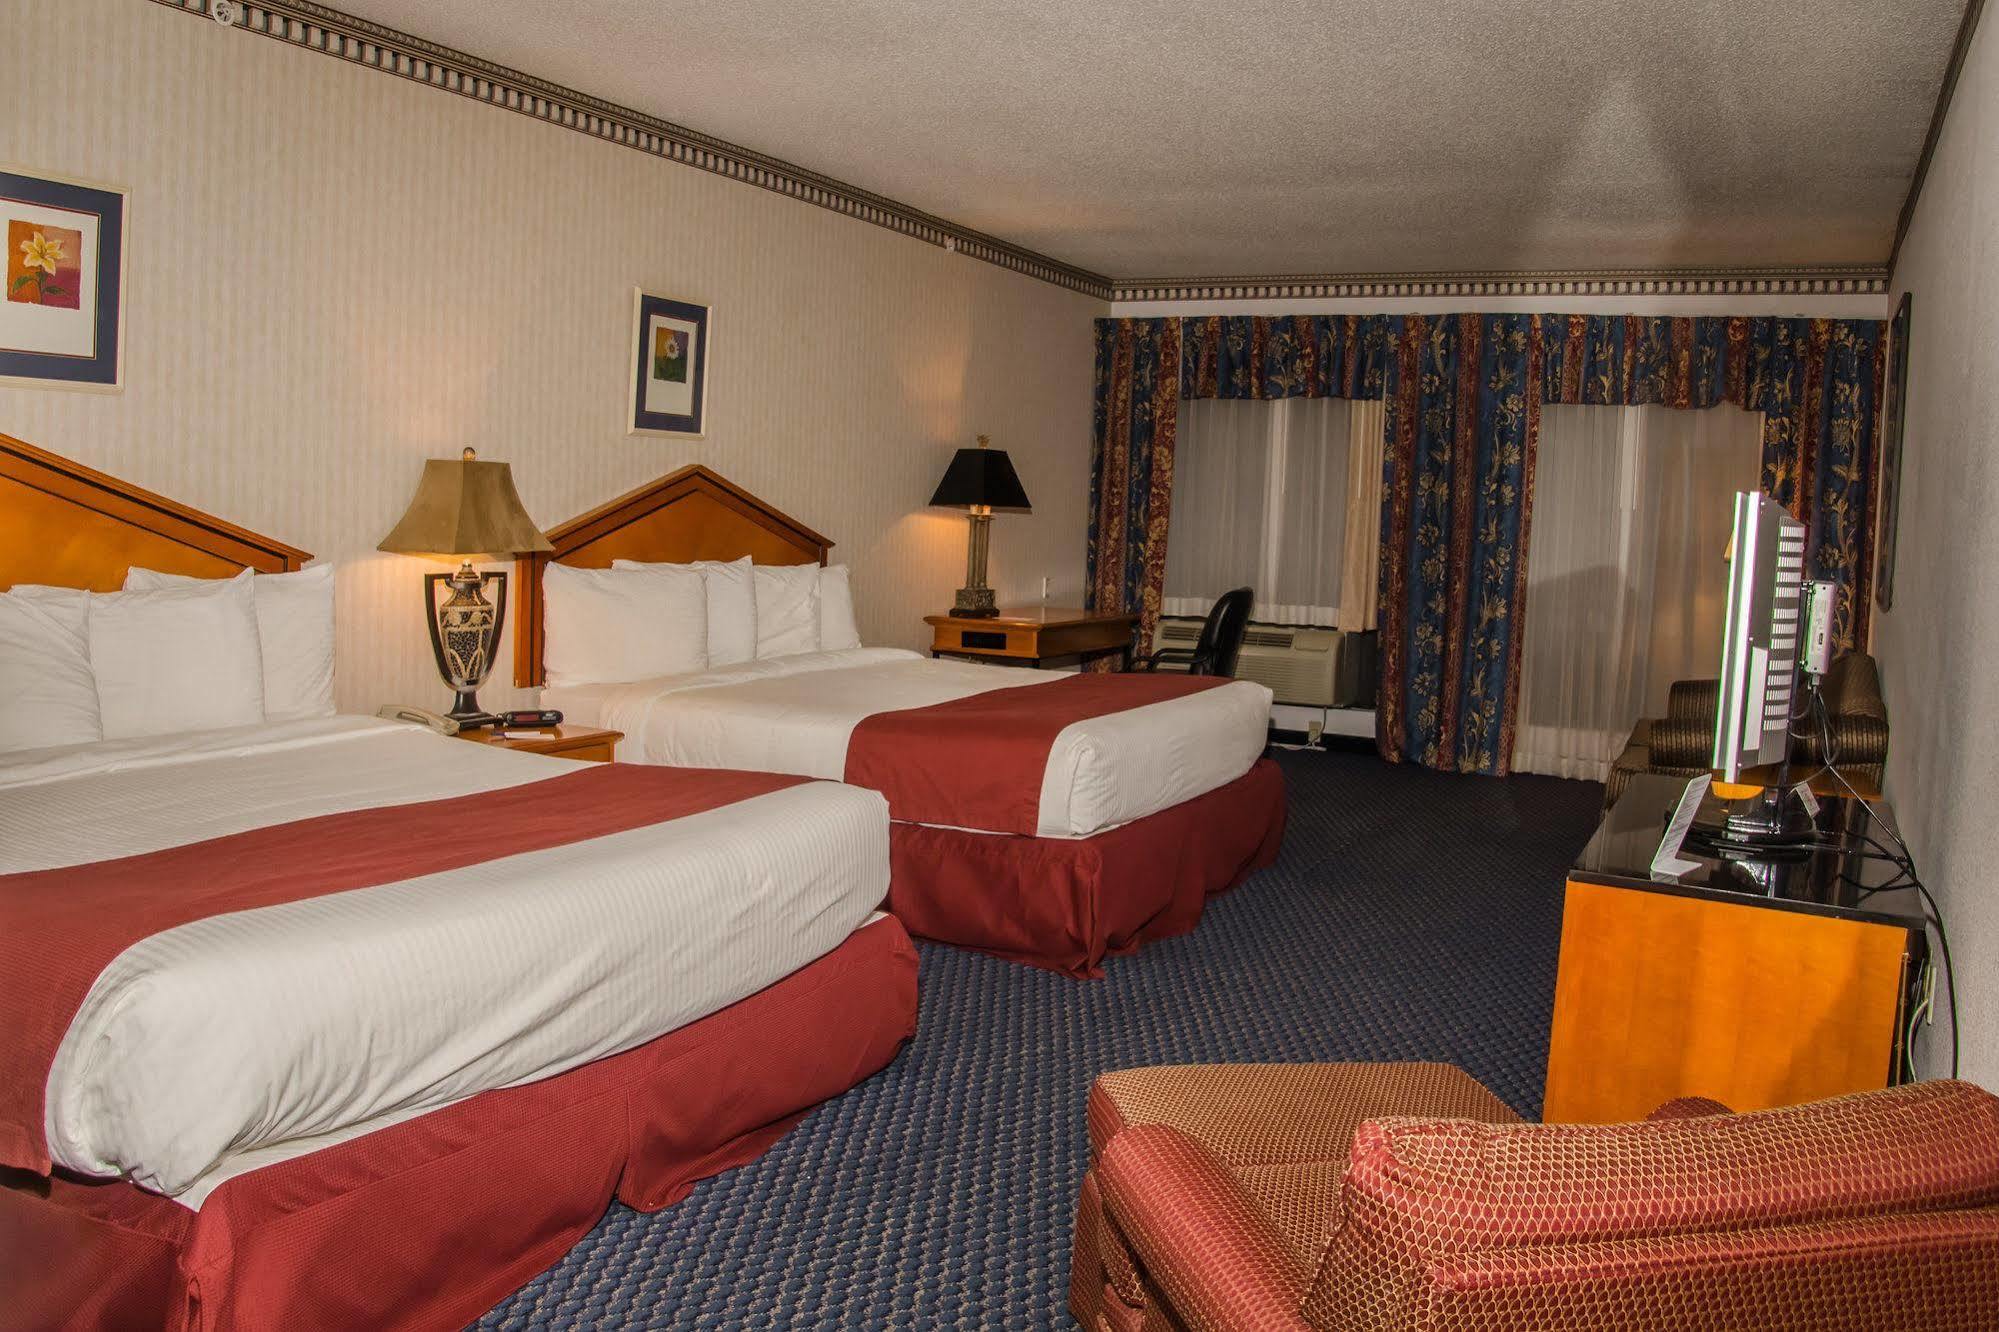 Aspire Hotel And Suites Gettysburg Dış mekan fotoğraf